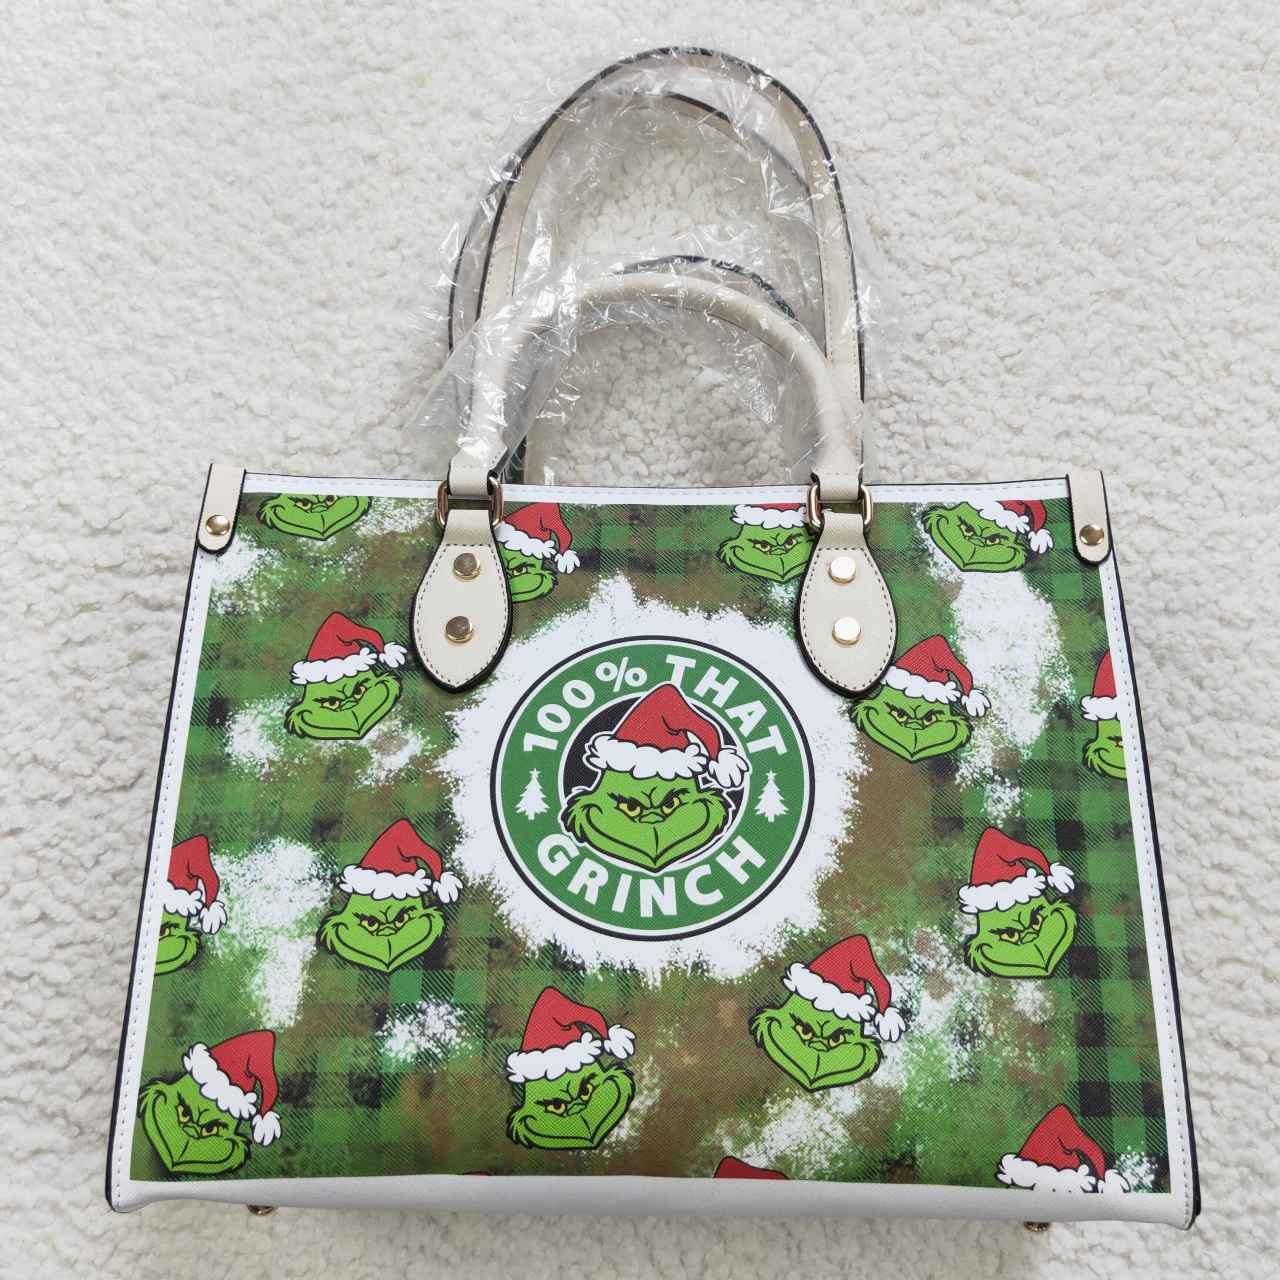 BA0145 Tote bag Christmas bag handbag